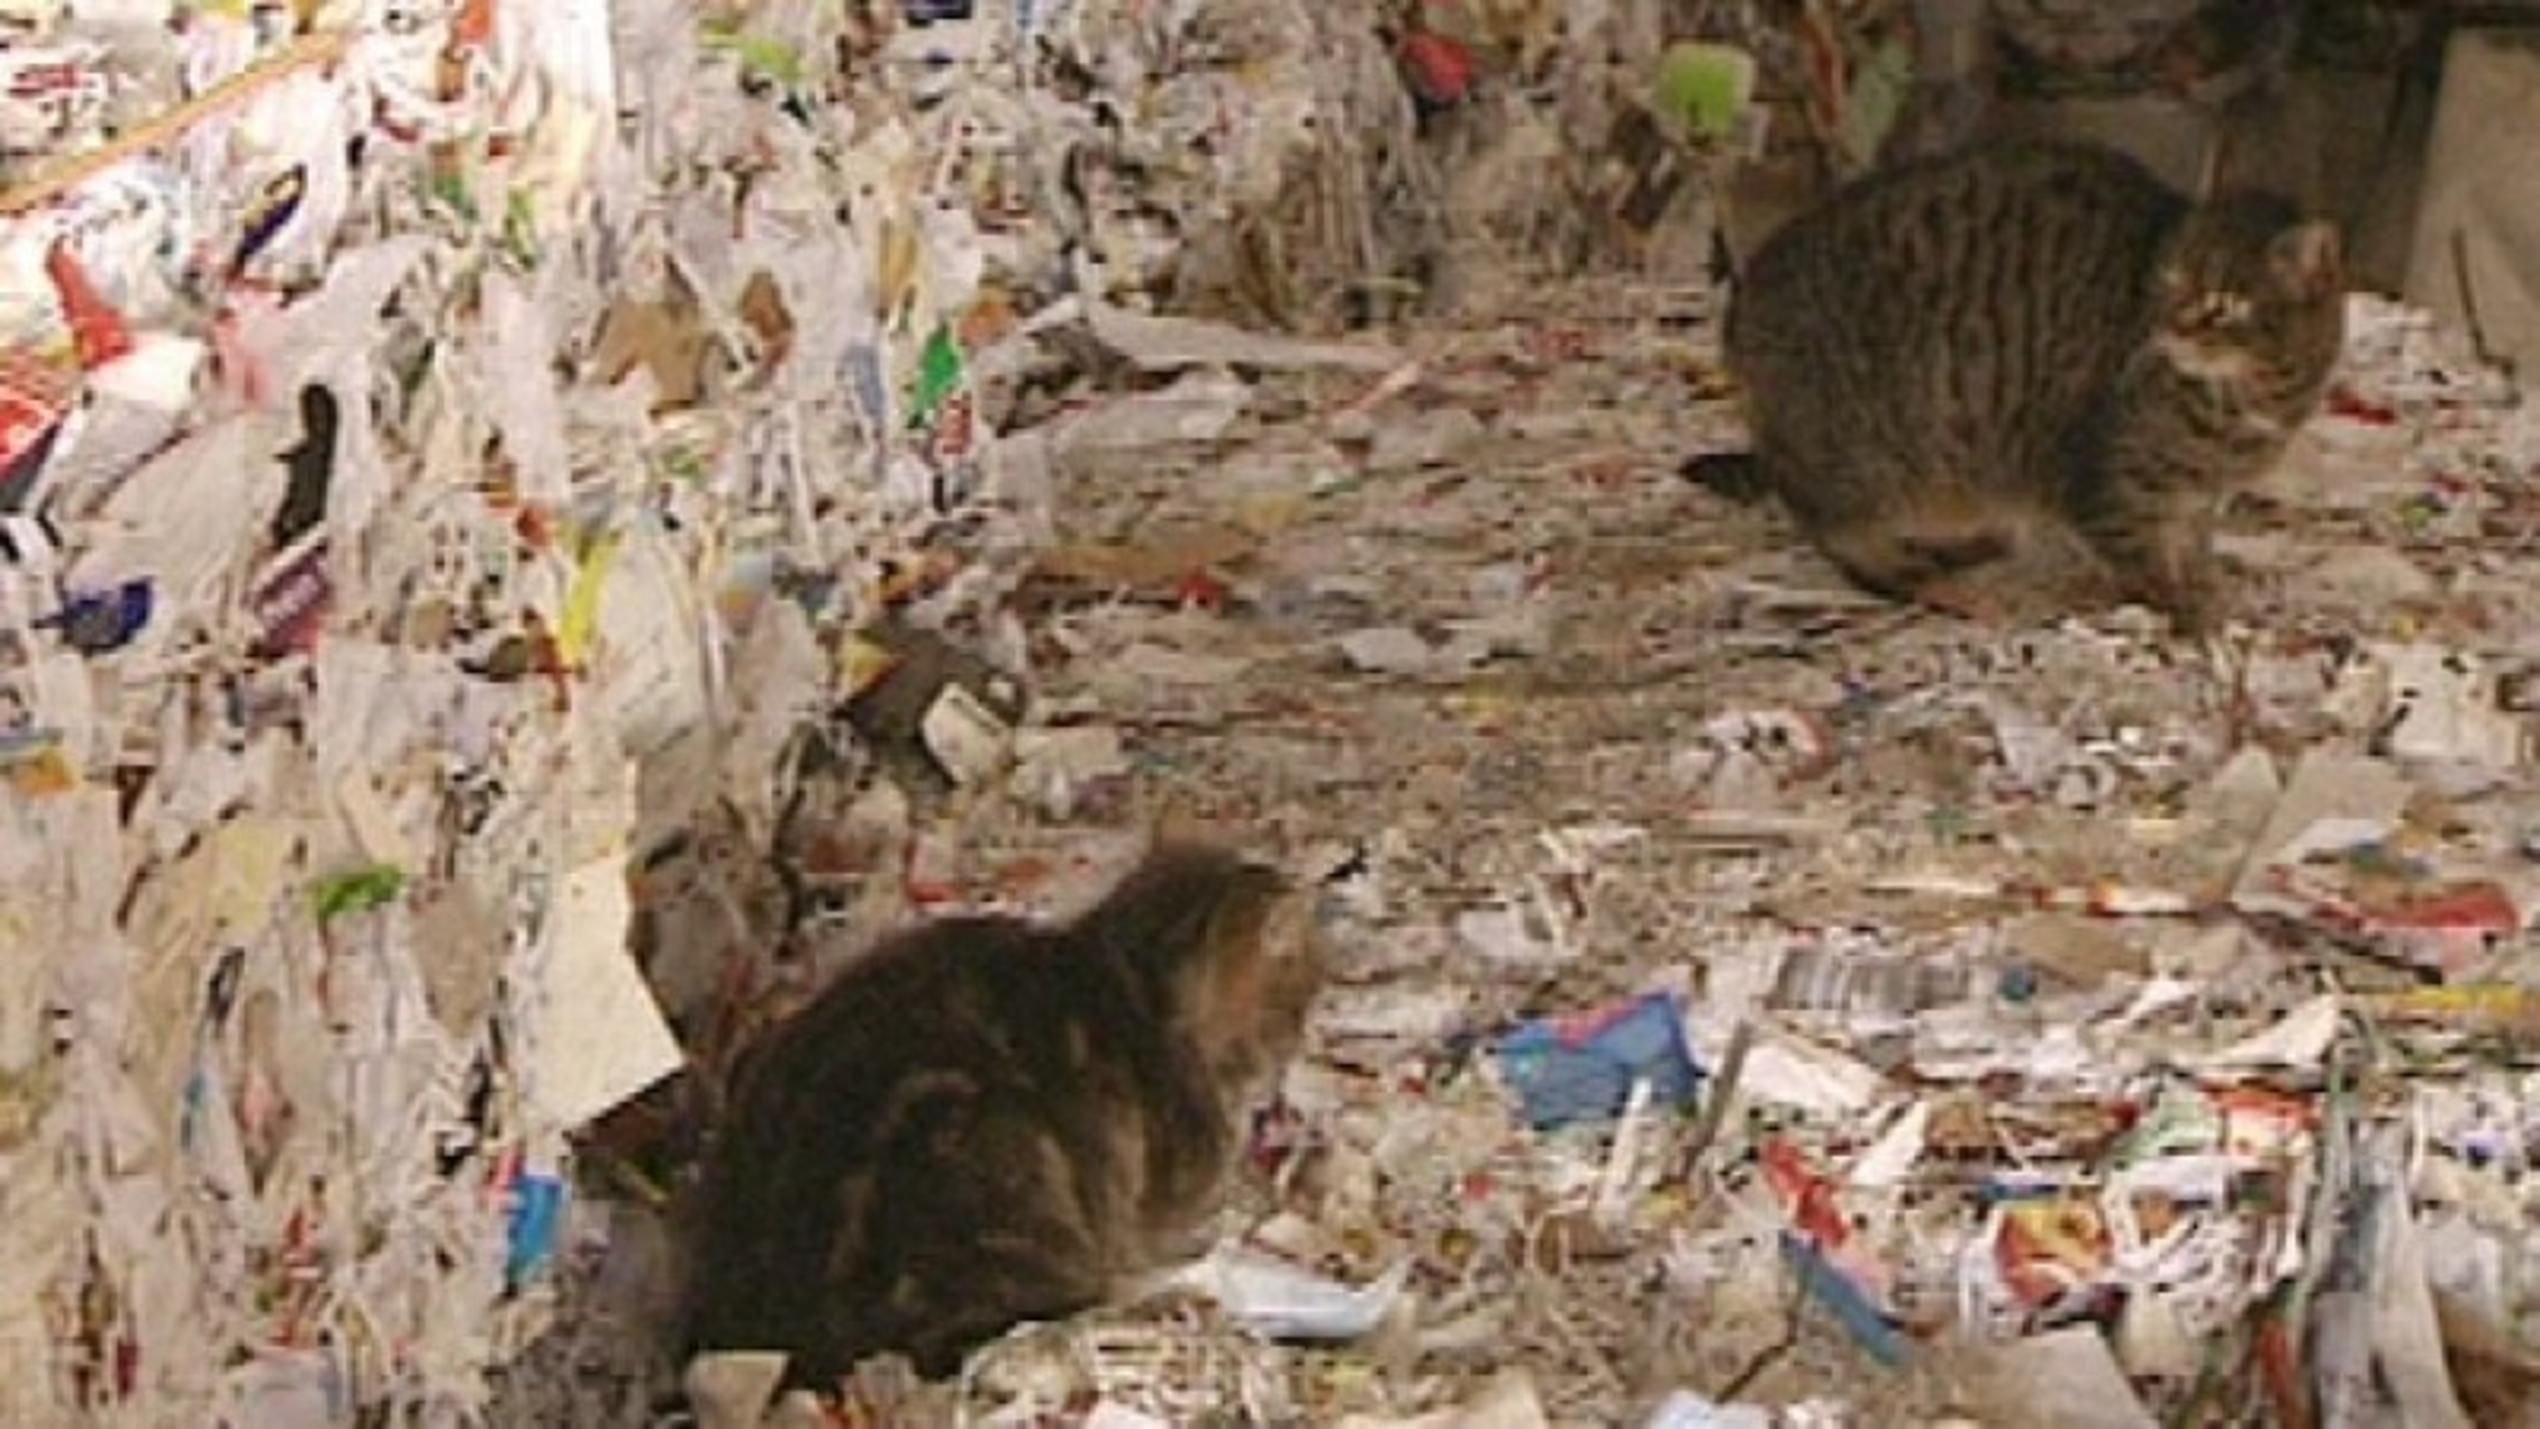 Katzen auf der Mülldeponie